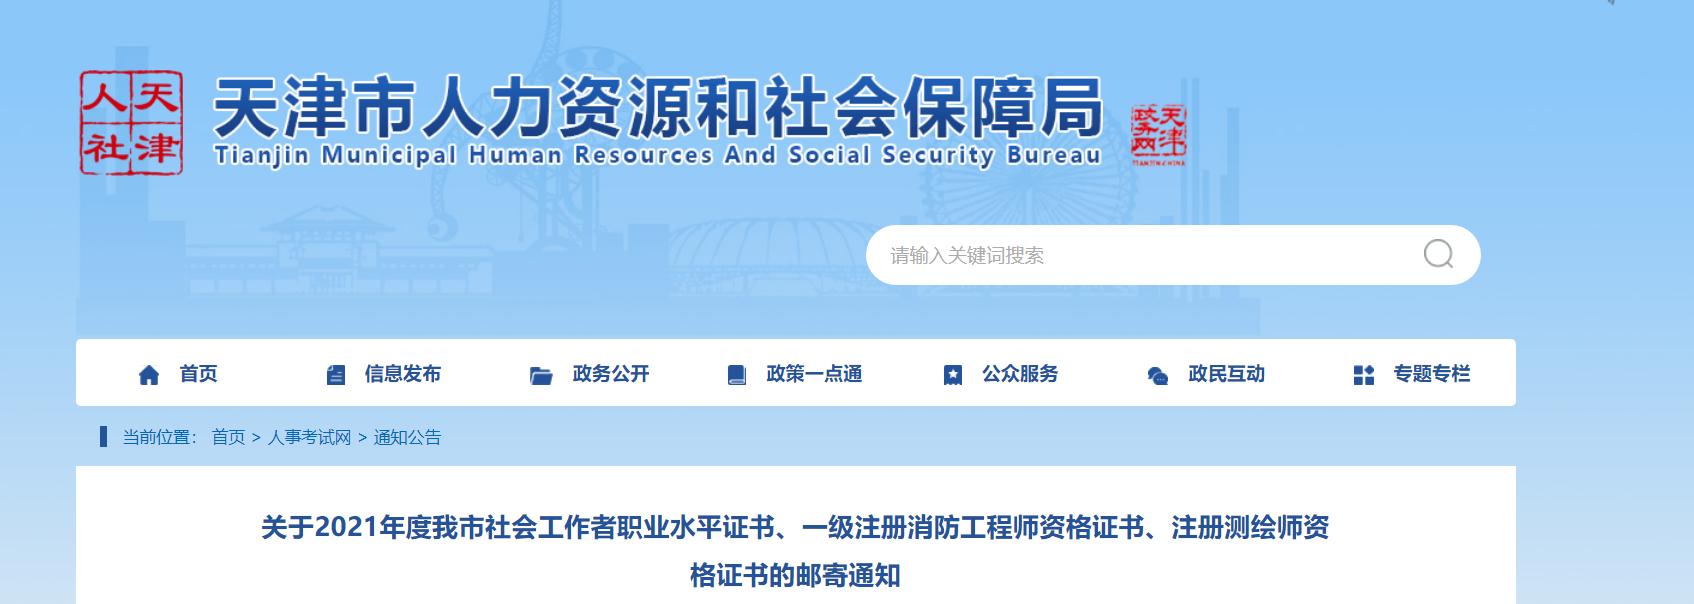 2021天津社会工作者职业水平证书邮寄通知